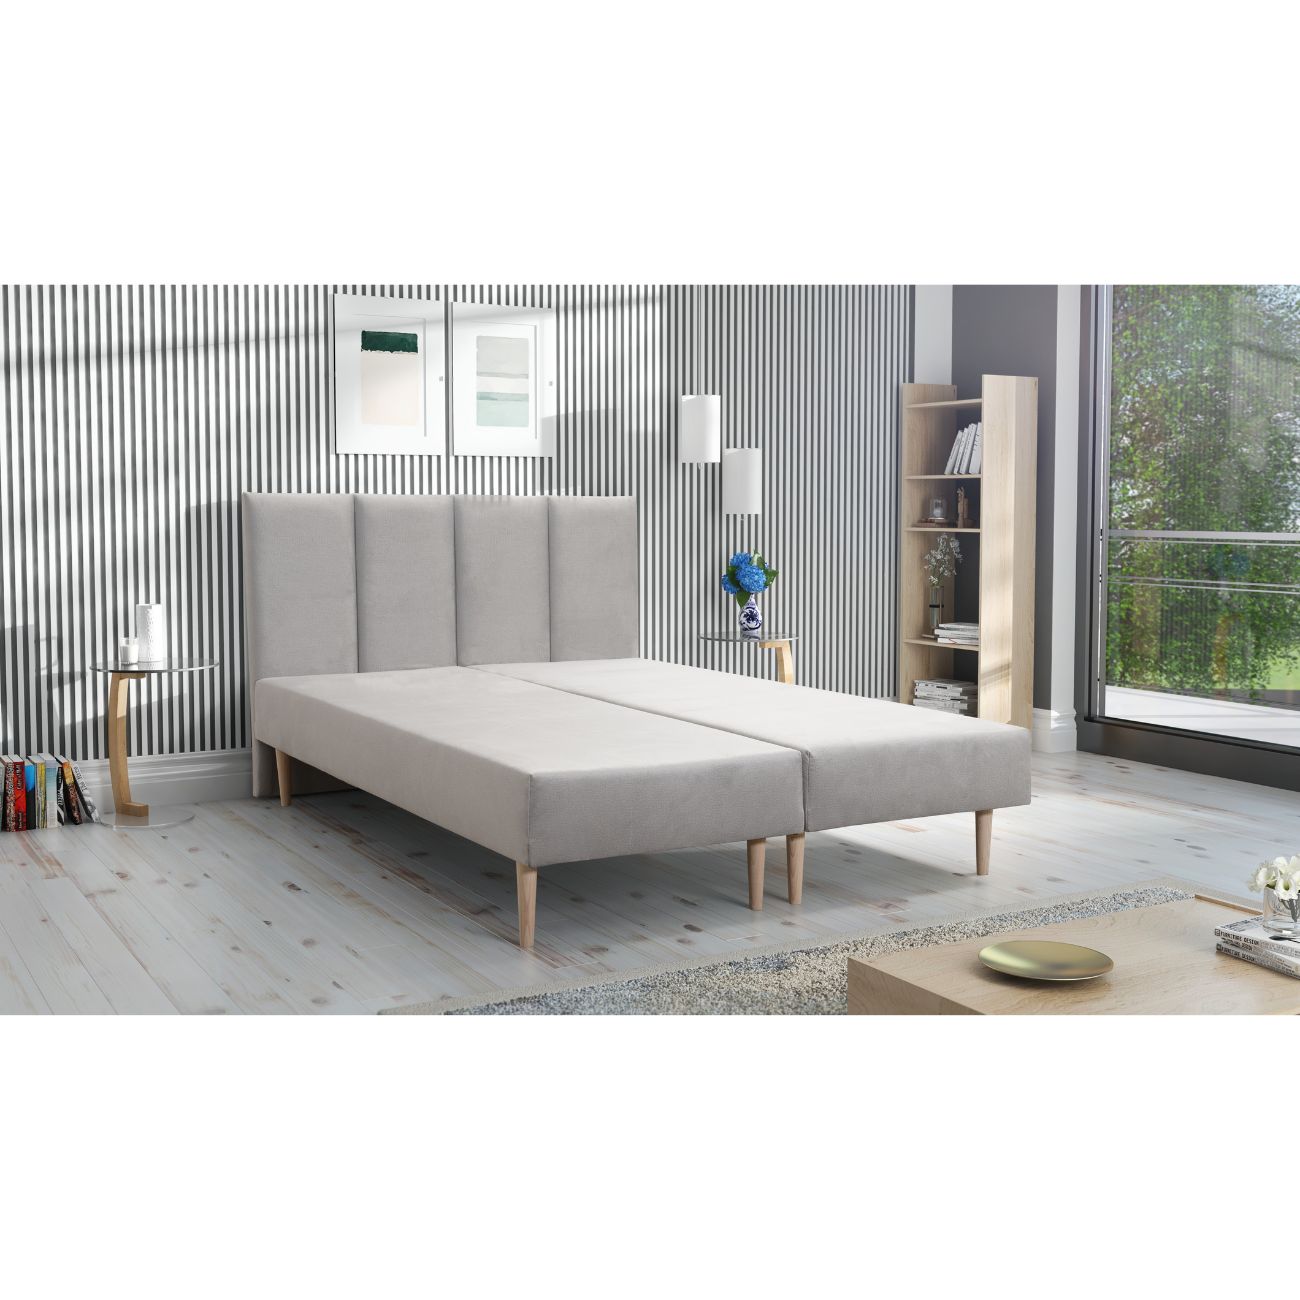 Zdjęcie przedstawiające przykładową aranżację sypialni z łóżkiem tapicerowanym z materacem Freya. Tanie łóżko tapicerowane do sypialni z materacem dostępne na dmsm.pl taniej niż Jysk, Ikea, Agata Meble, Bodzio Meble